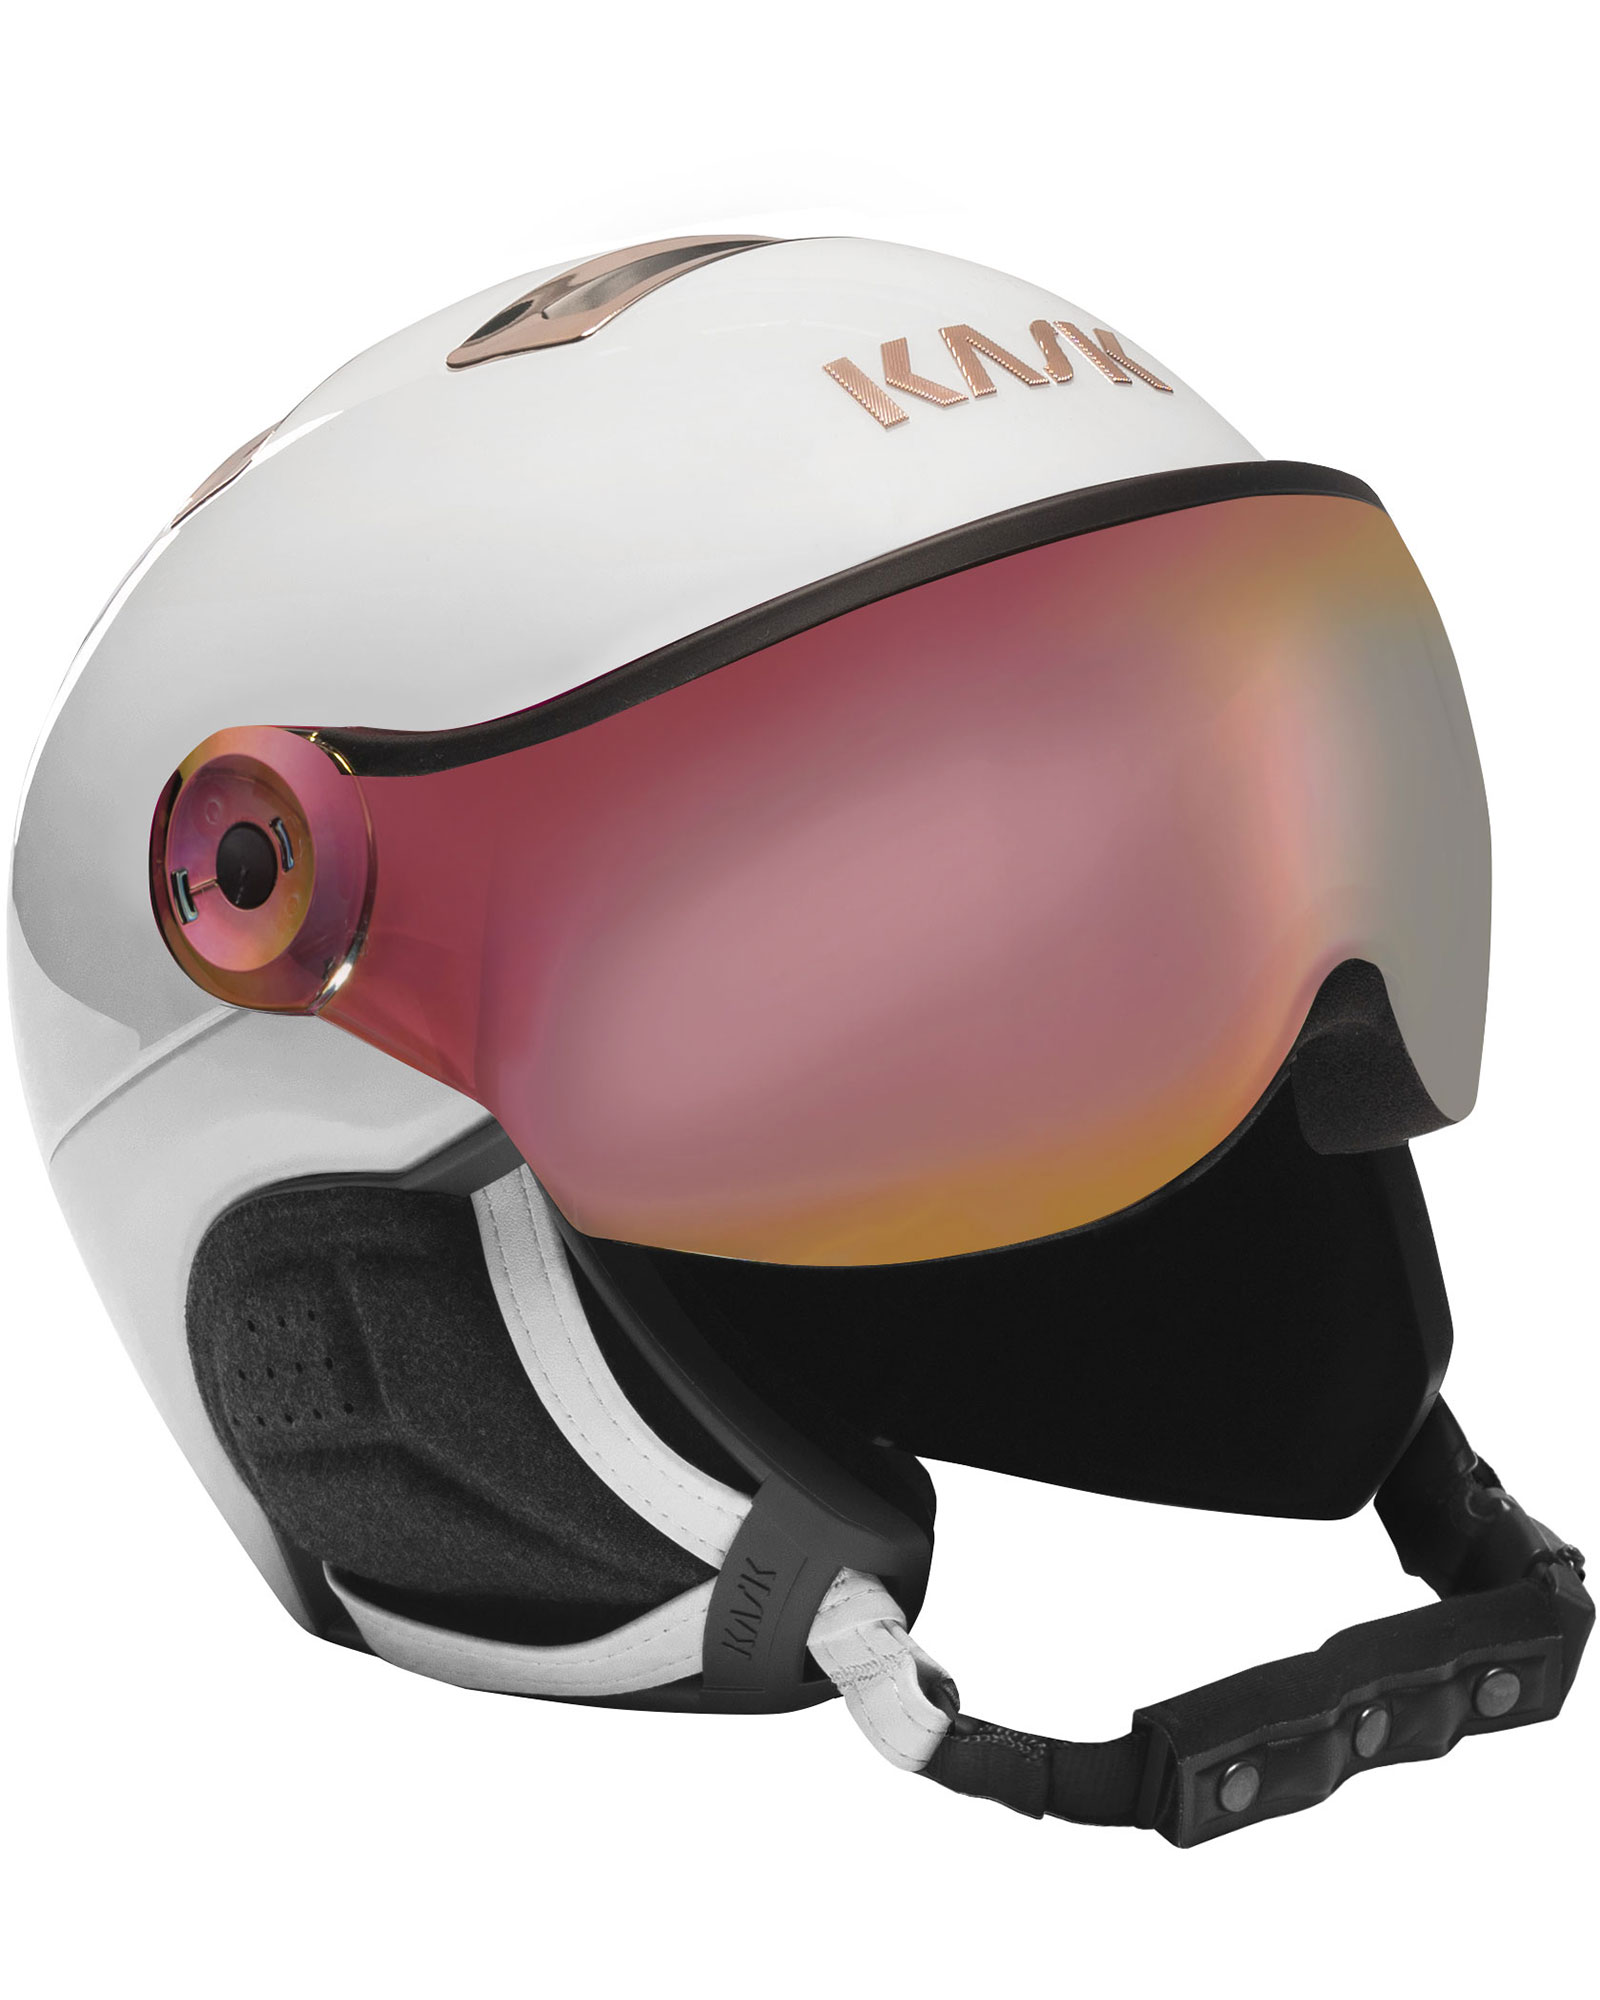 KASK Chrome Visor Helmet - White/Pink Gold - Pink Gold Mirror Visor S